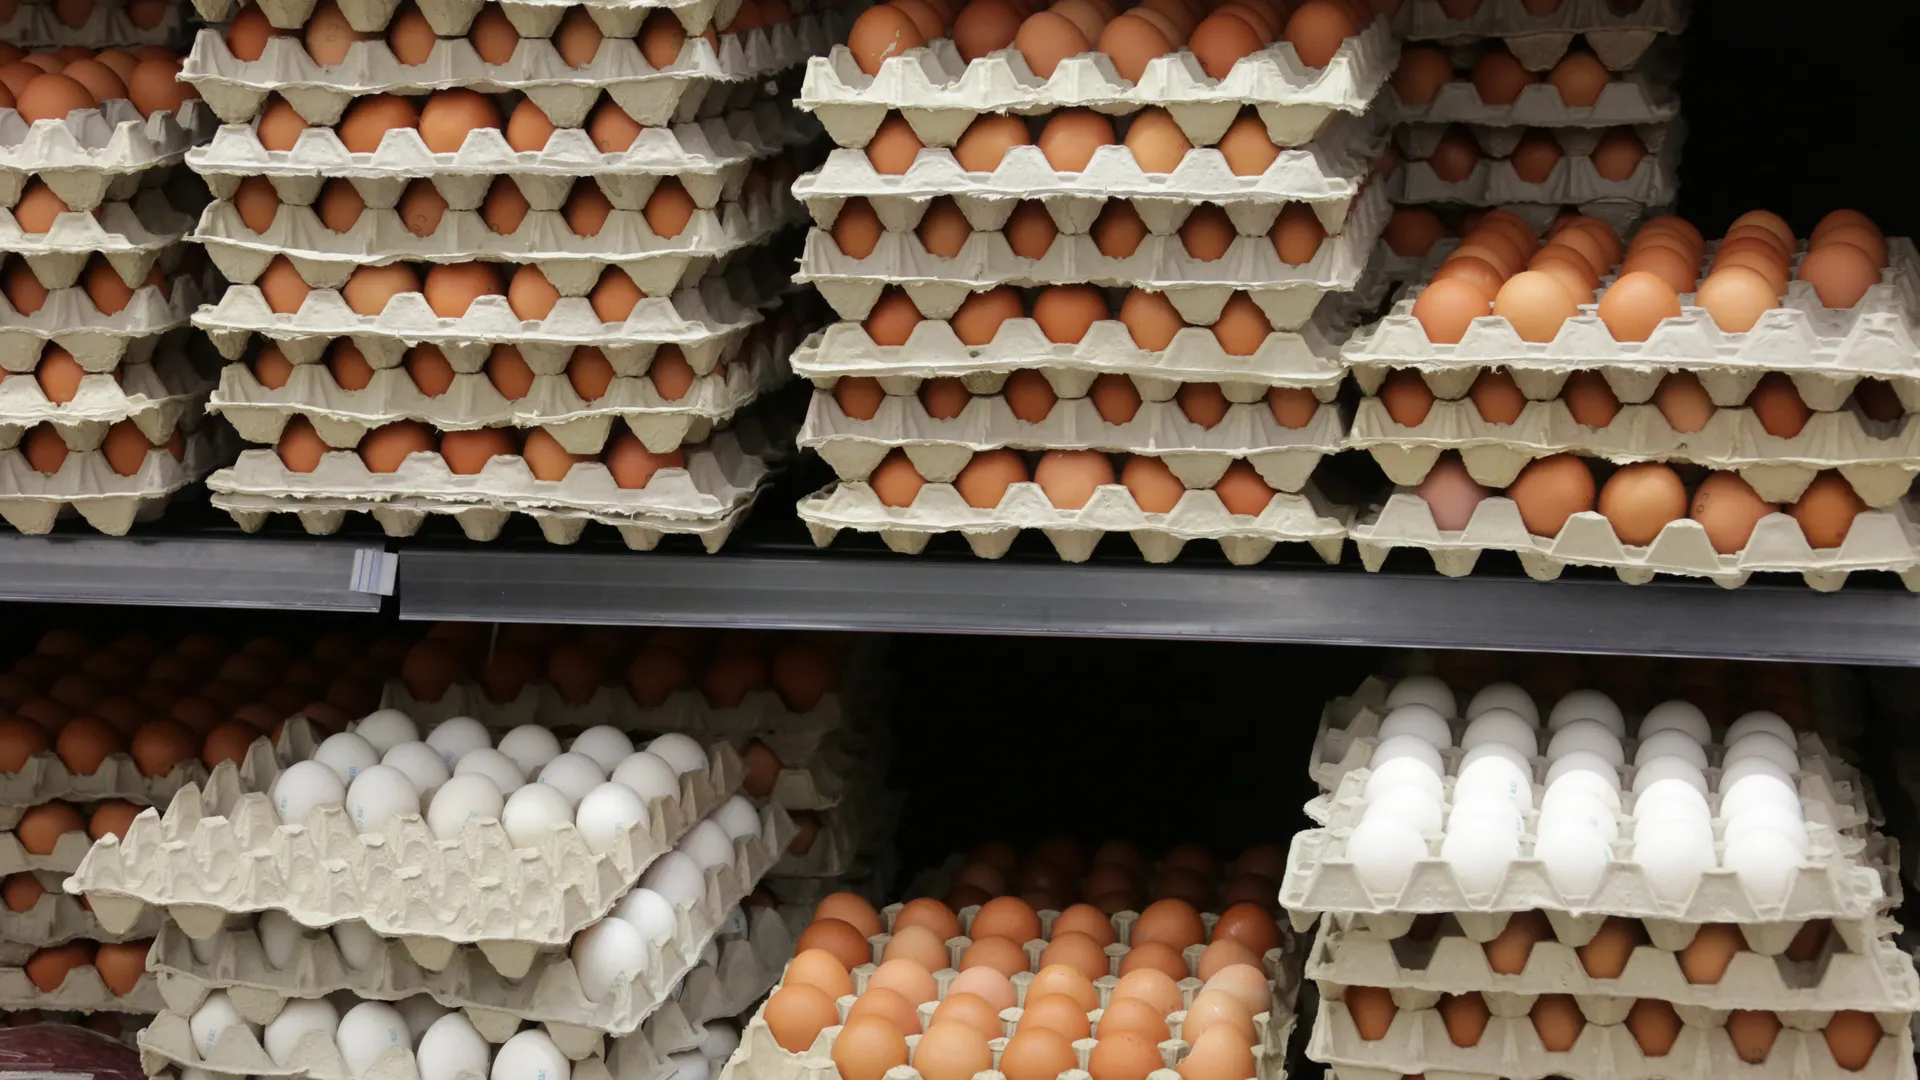 ФАС запретила участникам рынка необоснованно повышать цены на куриные яйца